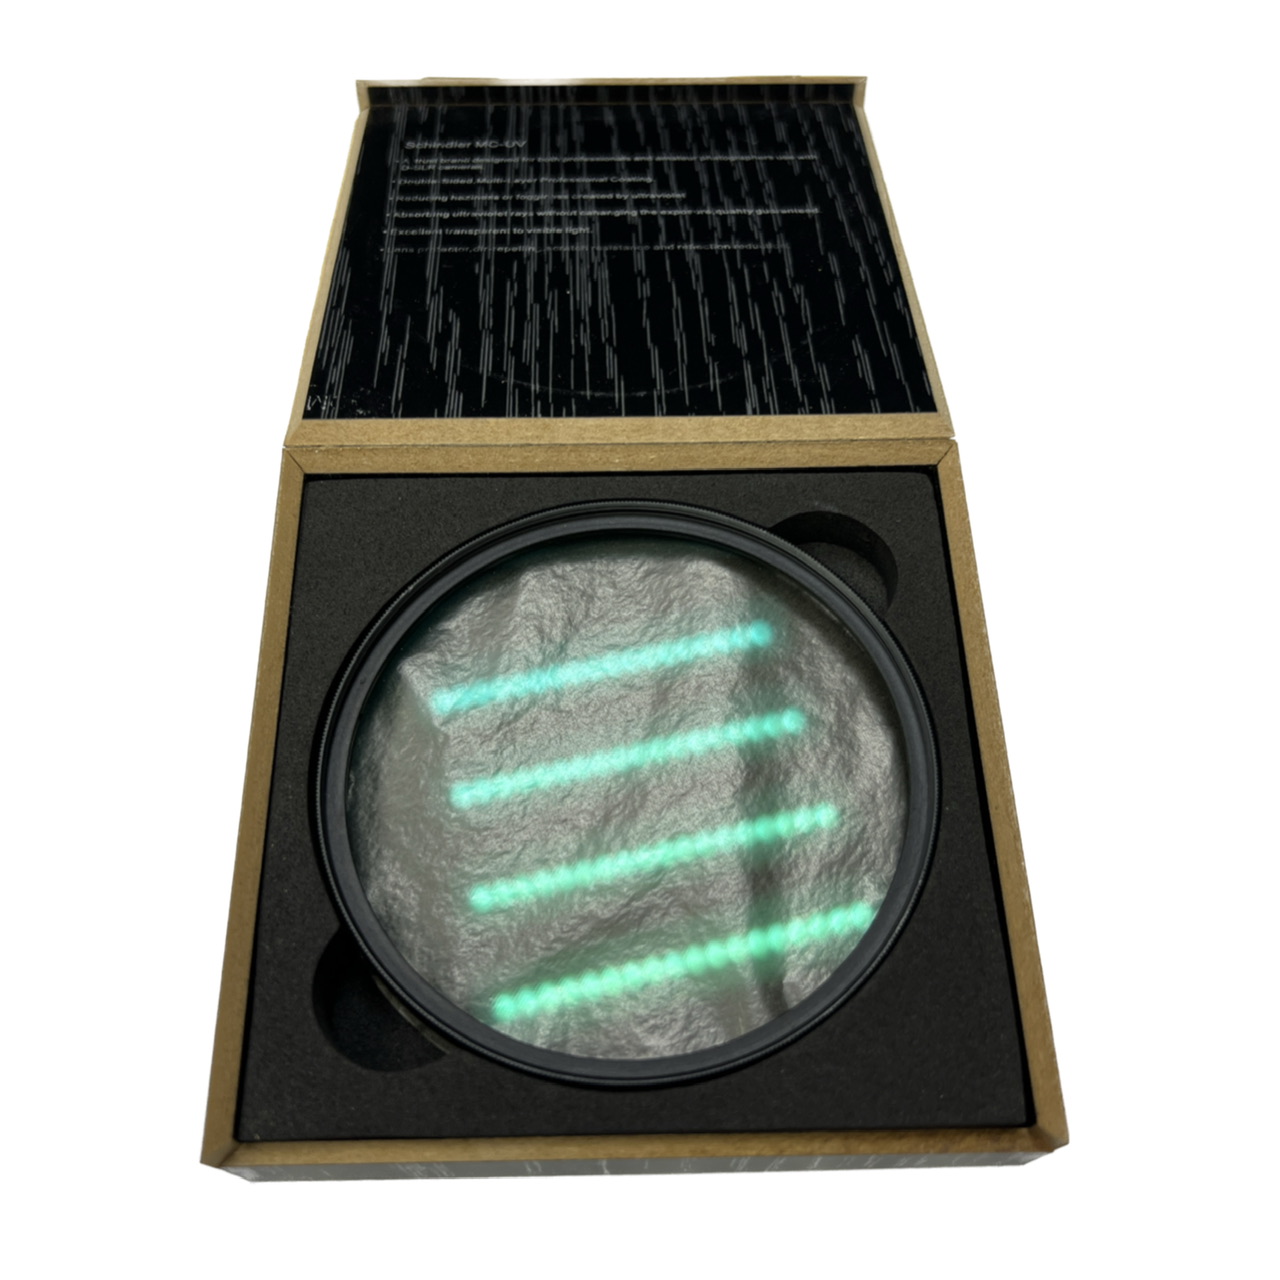 فیلتر لنز اشنایدر مدل GREEN COTING MC-UV 82mm